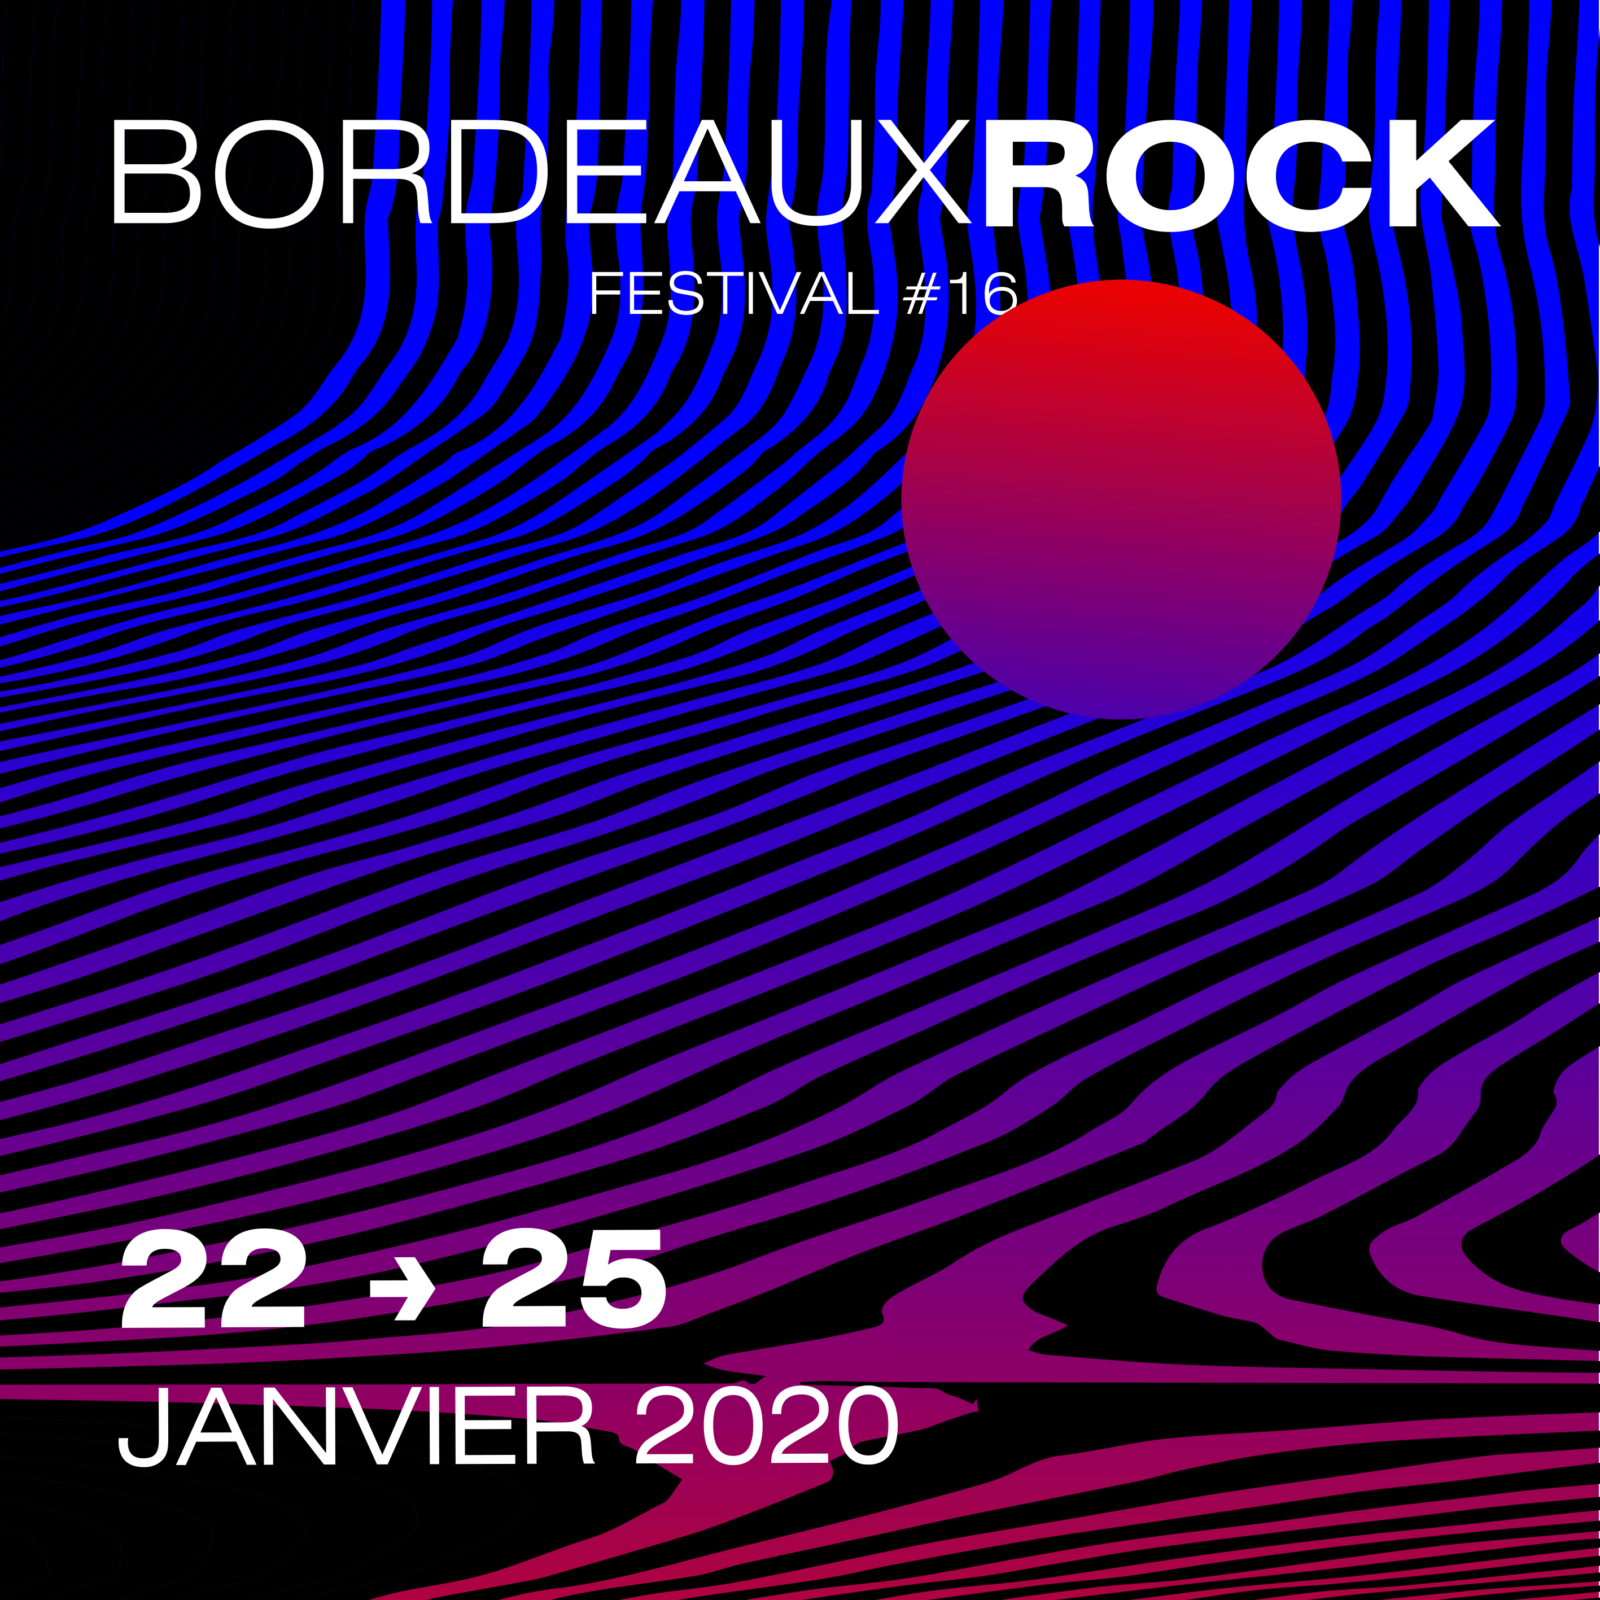 [Festival] Bordeaux Rock 2020